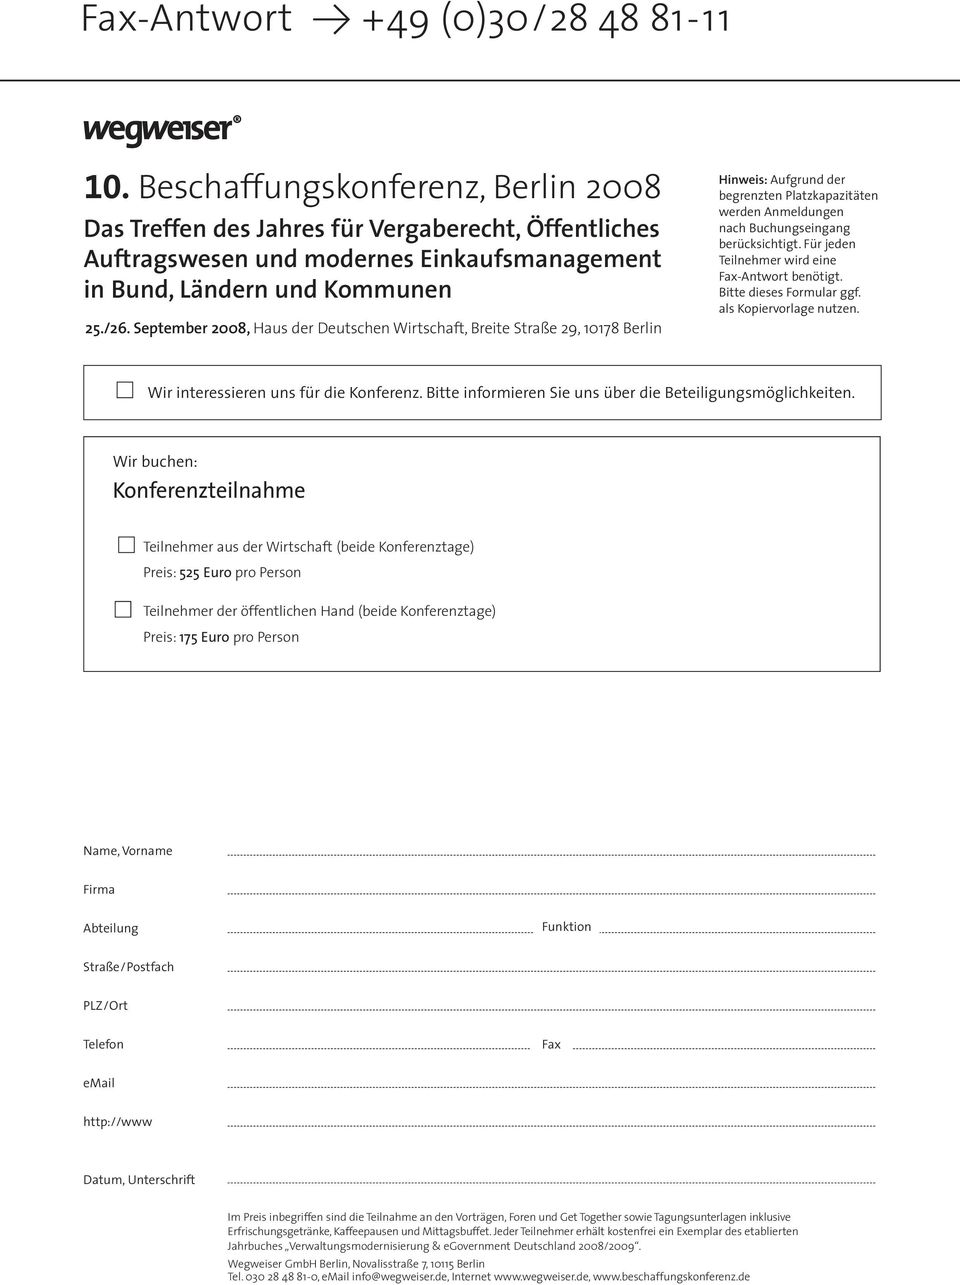 September 2008, Haus der Deutschen Wirtschaft, Breite Straße 29, 10178 Berlin Hinweis: Aufgrund der begrenzten Platzkapazitäten werden Anmeldungen nach Buchungseingang berücksichtigt.